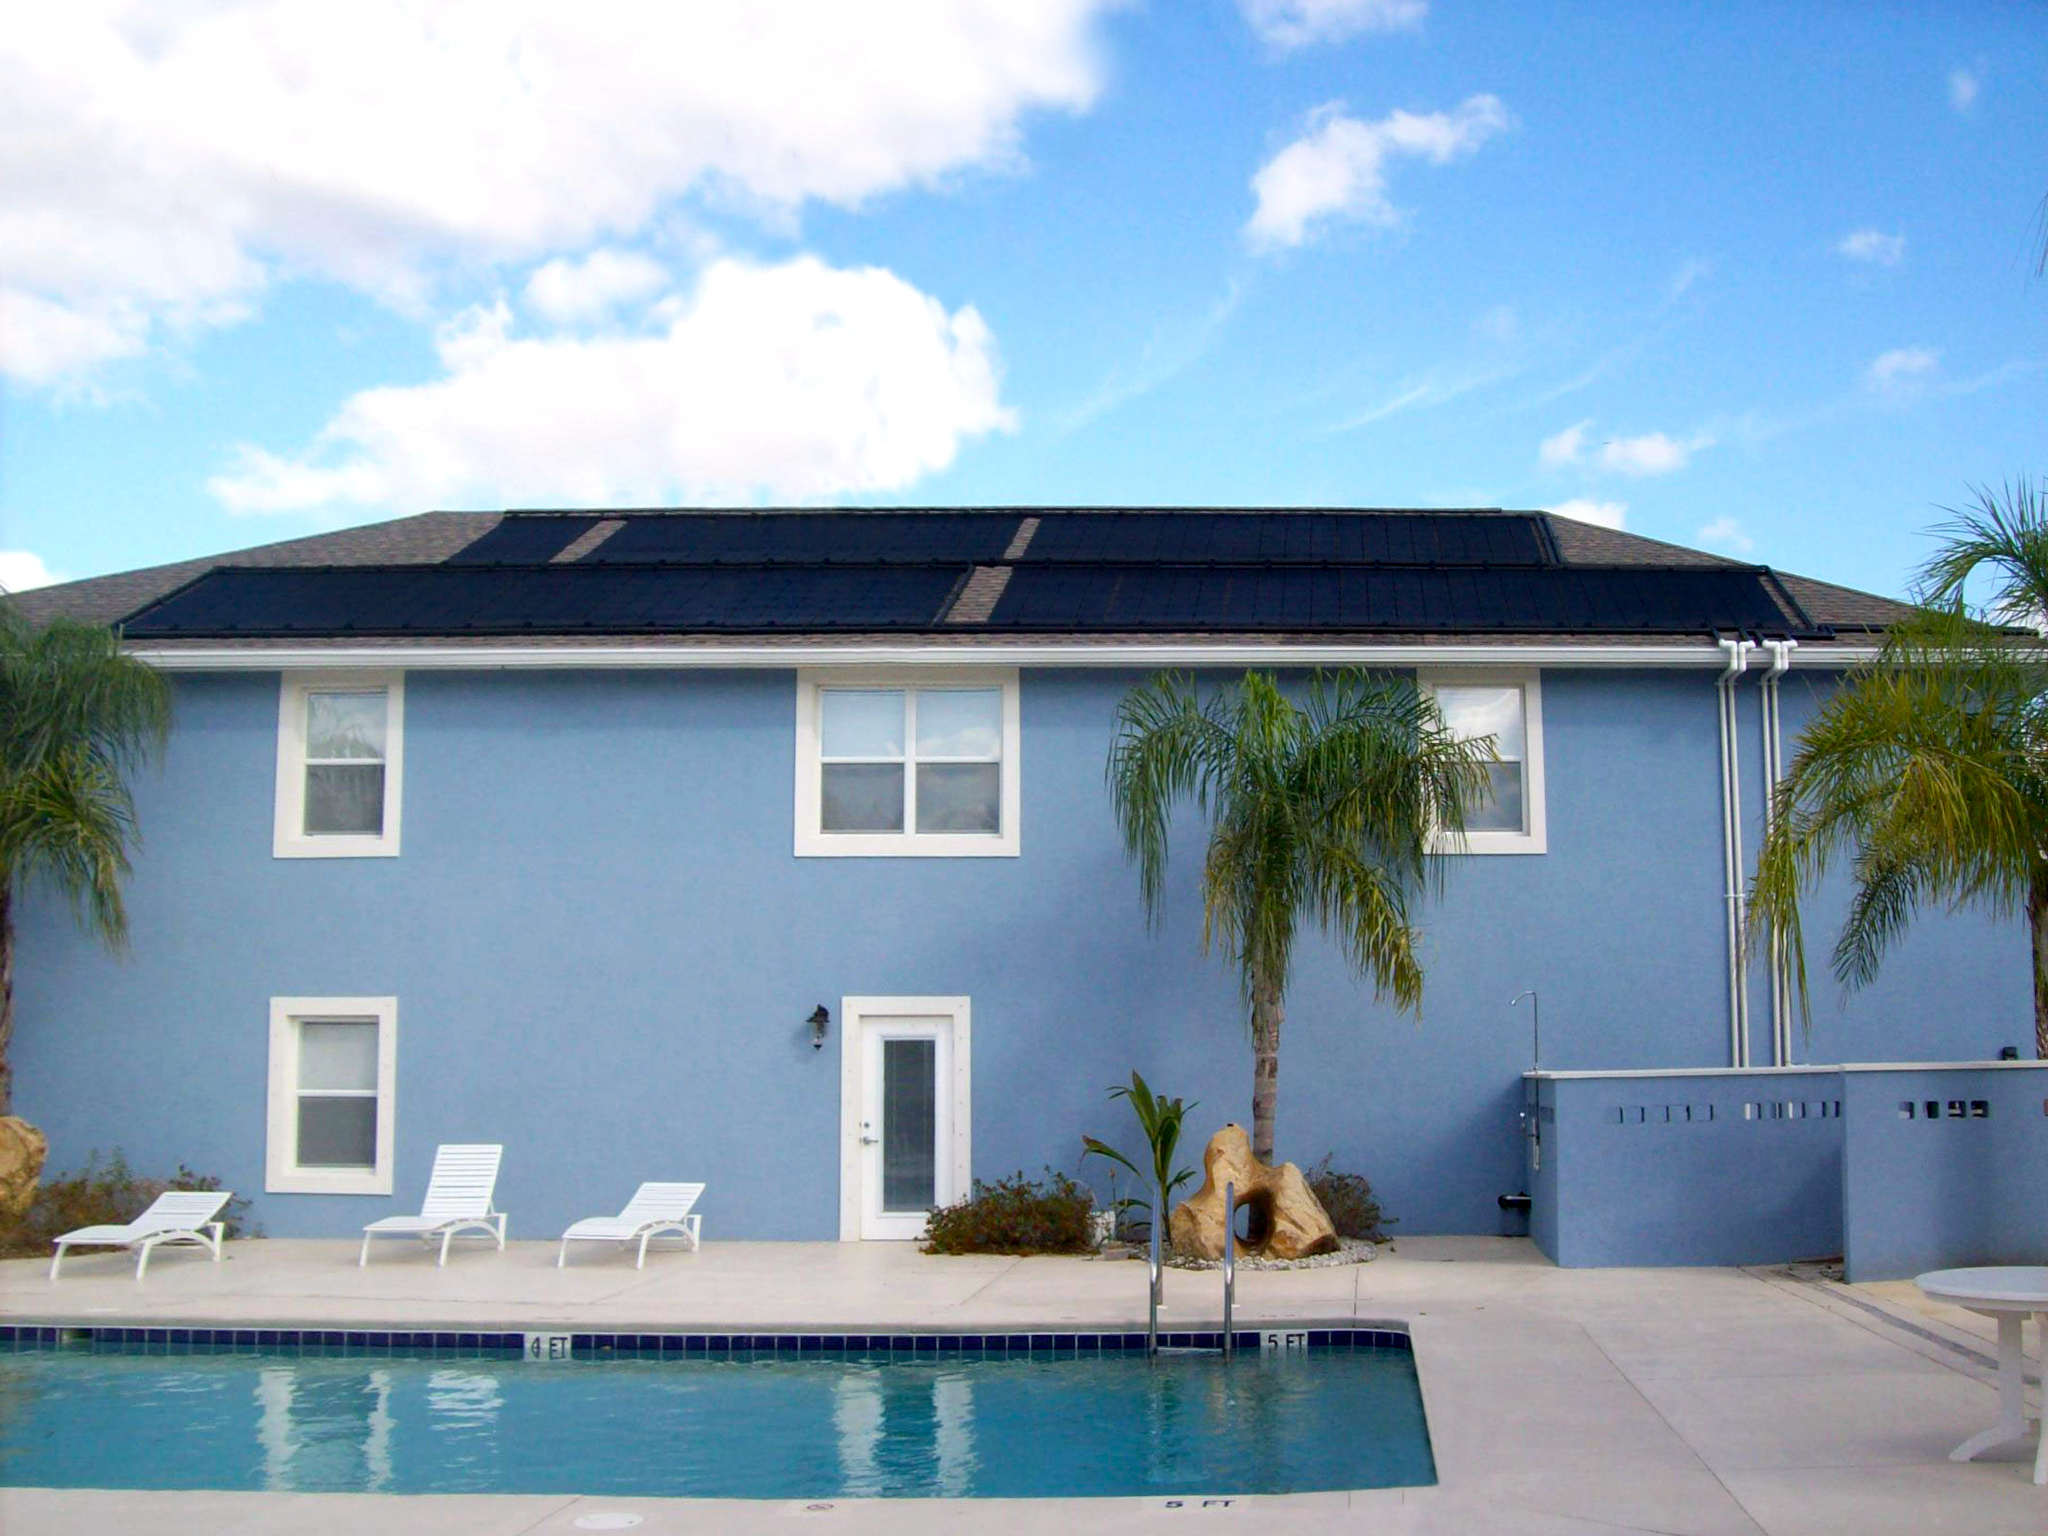 Calefacción solar para piscinas en una vivienda unifamiliar azul